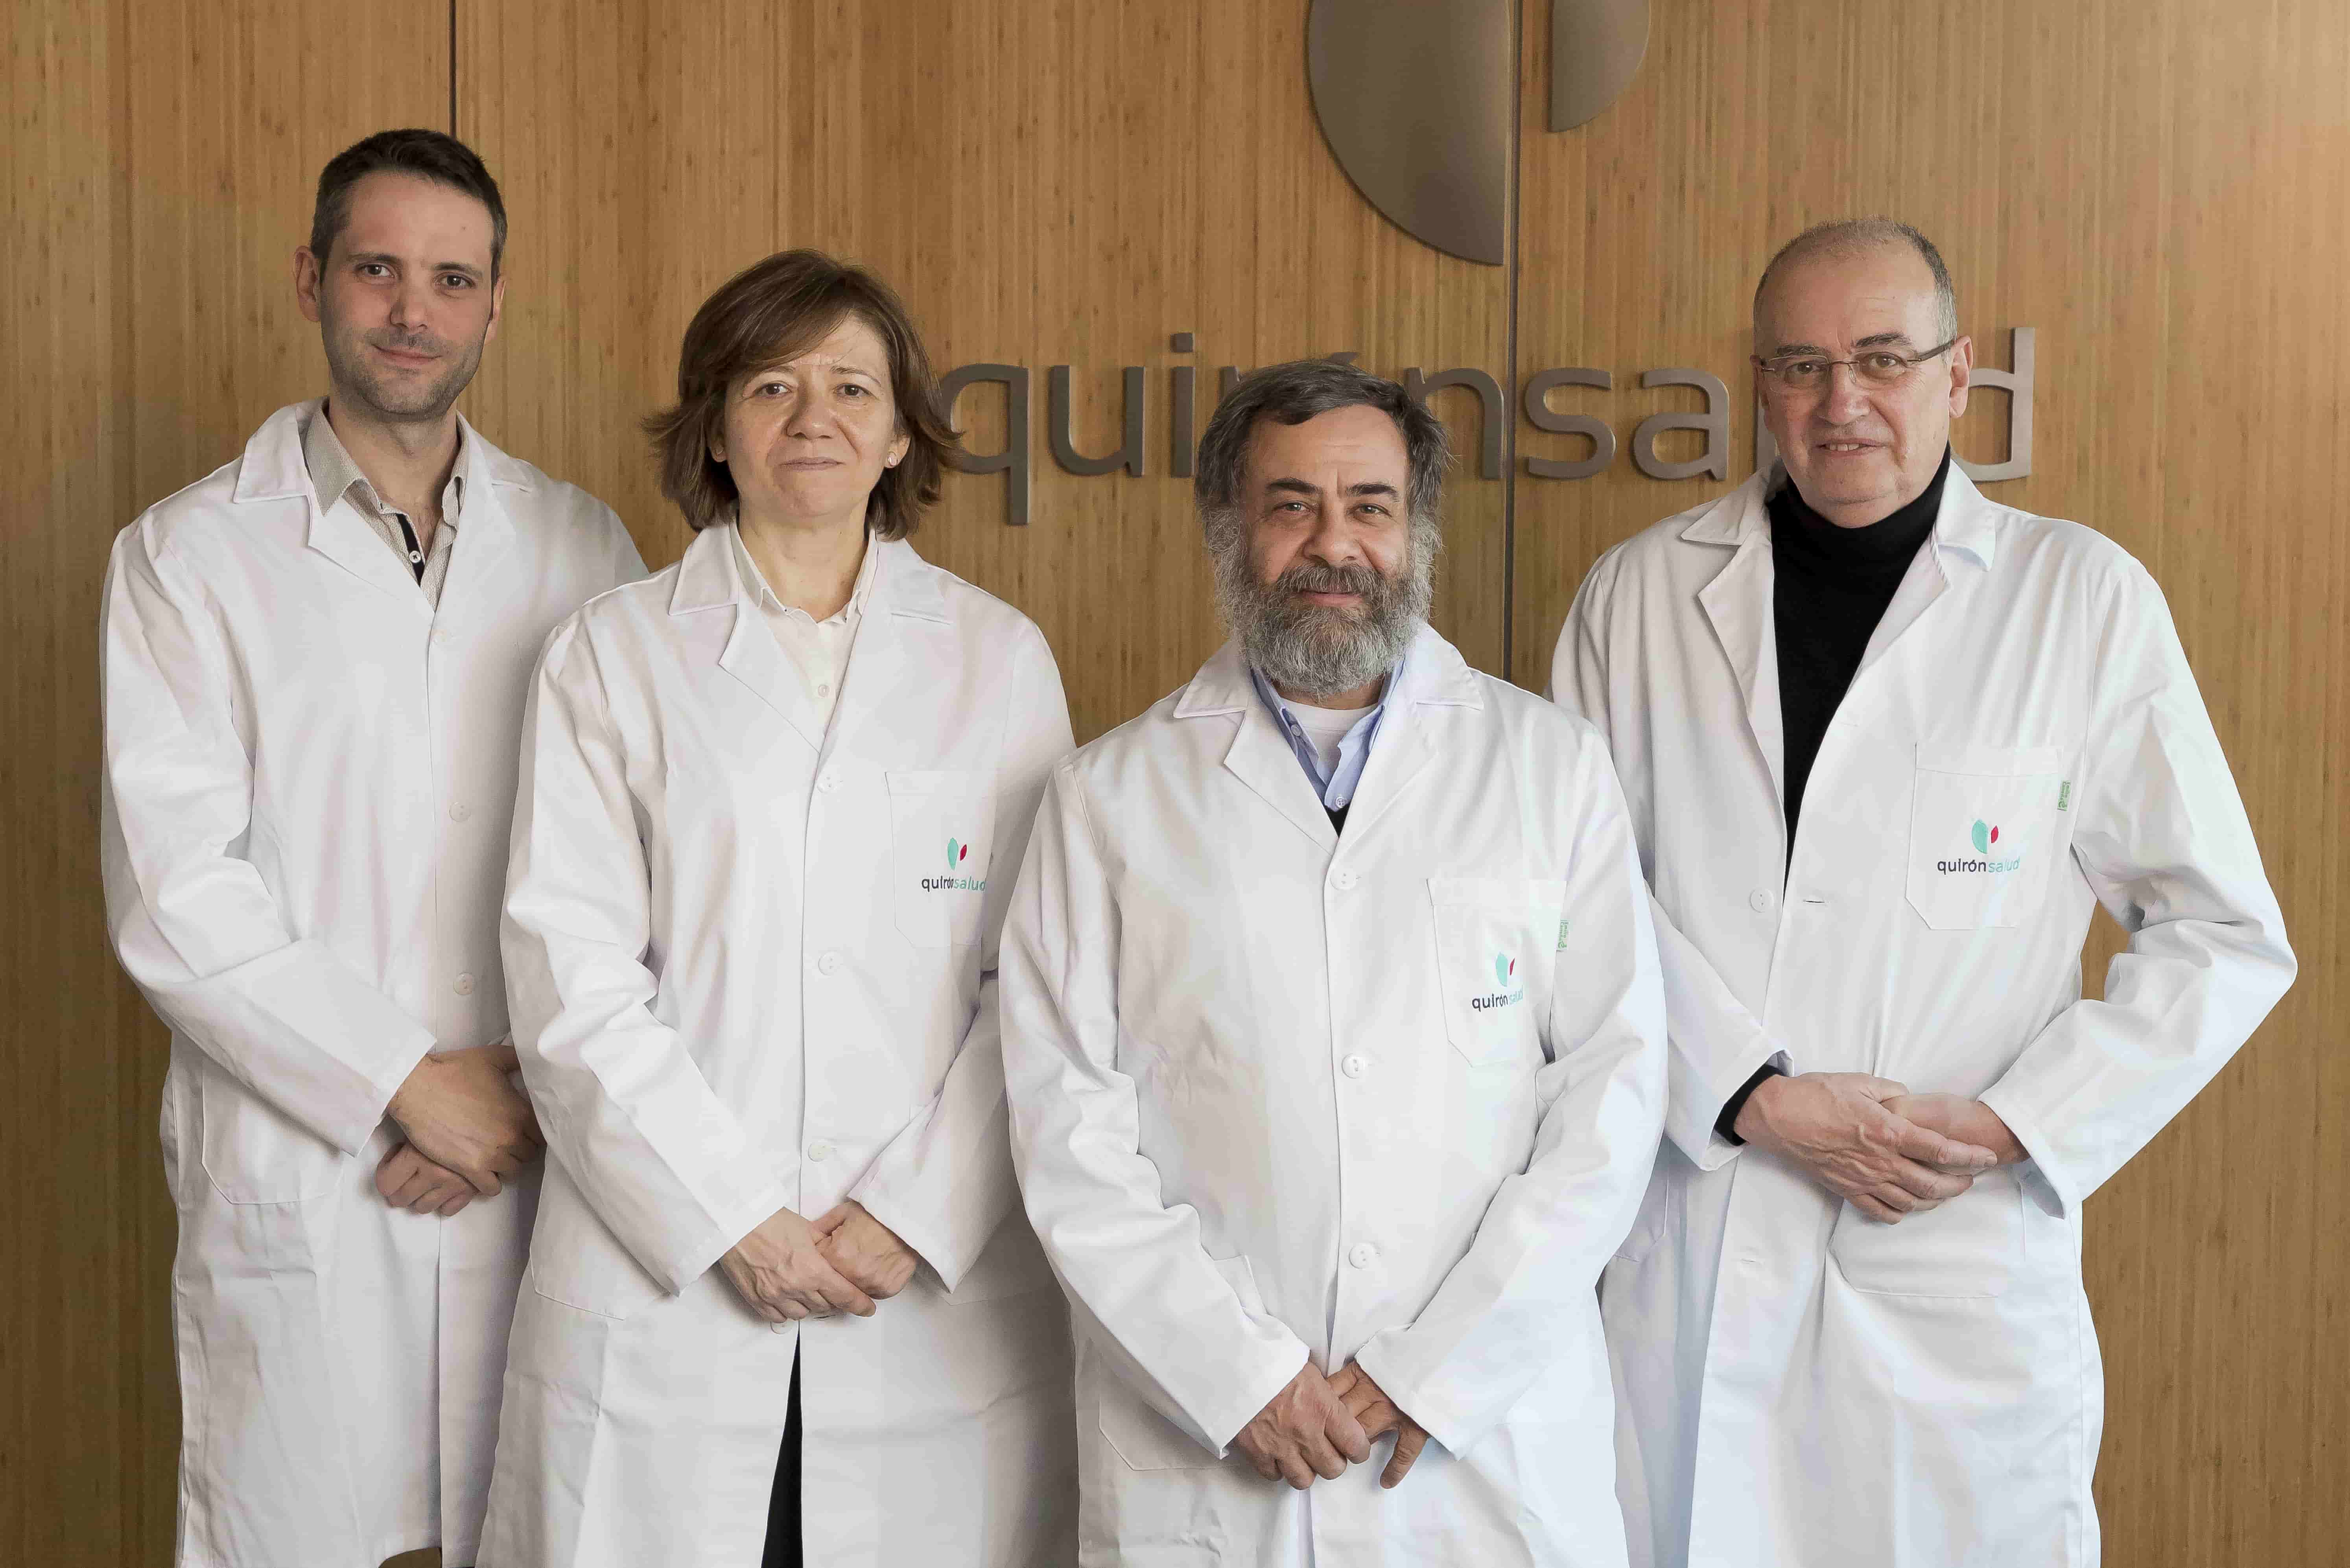 De izquierda a derecha los doctores Castro, Ares, Mazal y Miralbell @Quirónsalud